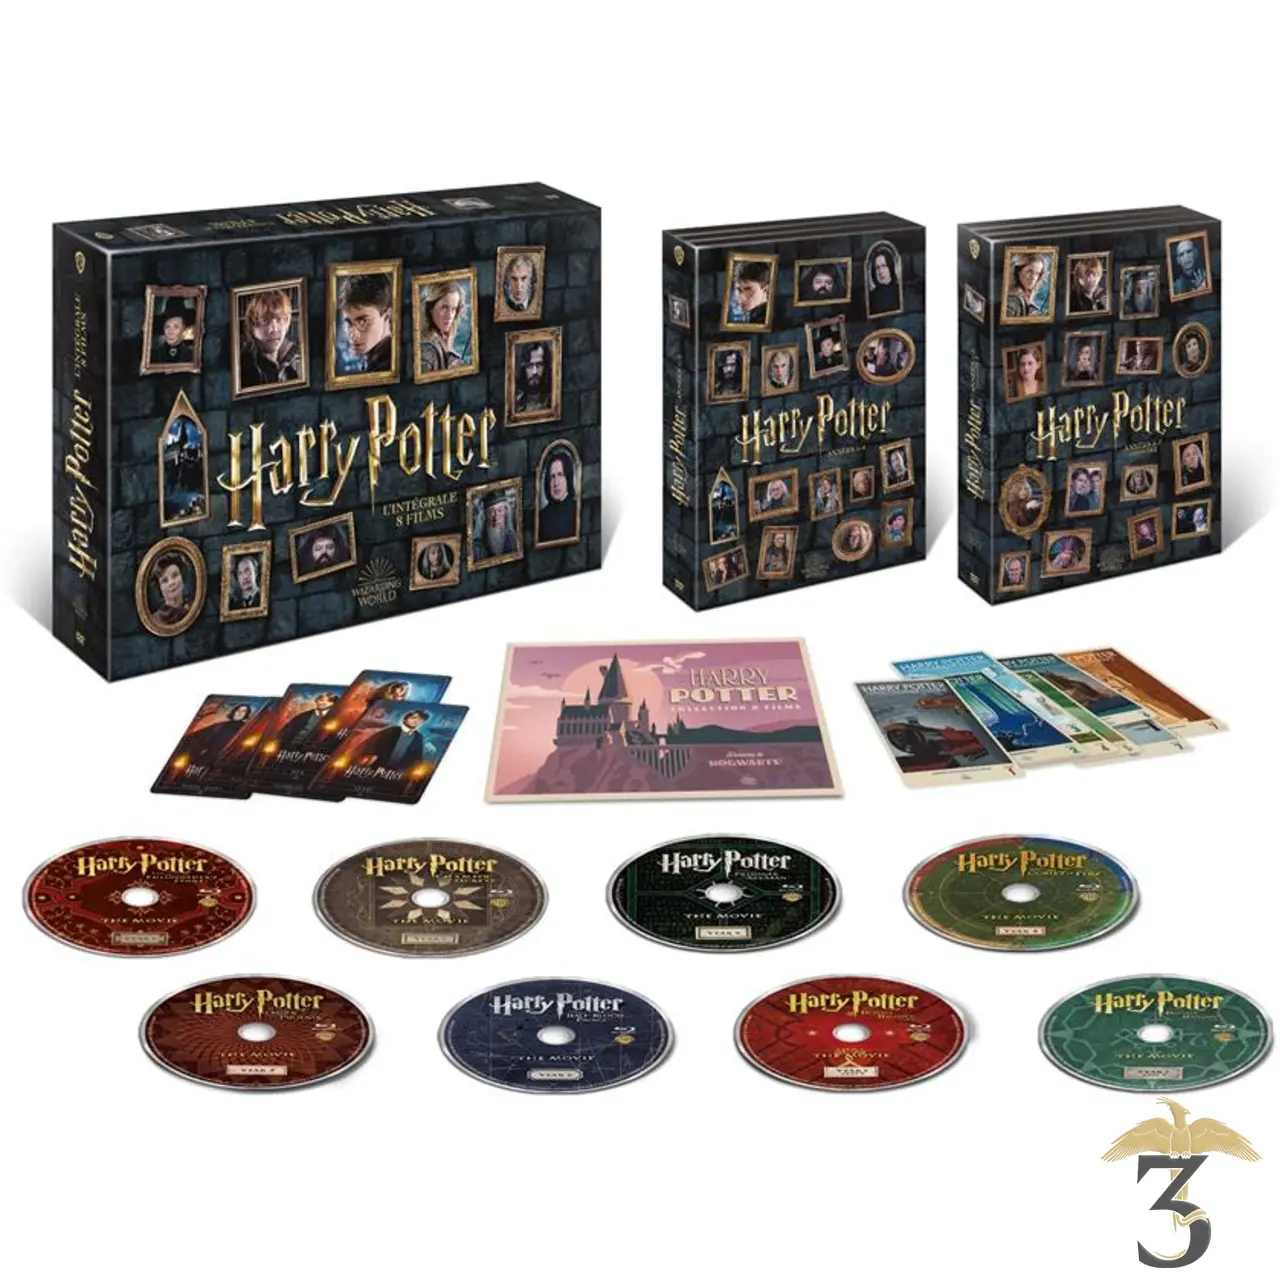 Coffret Harry Potter 1 à 7 Porte clé Hermione DVD pas cher 